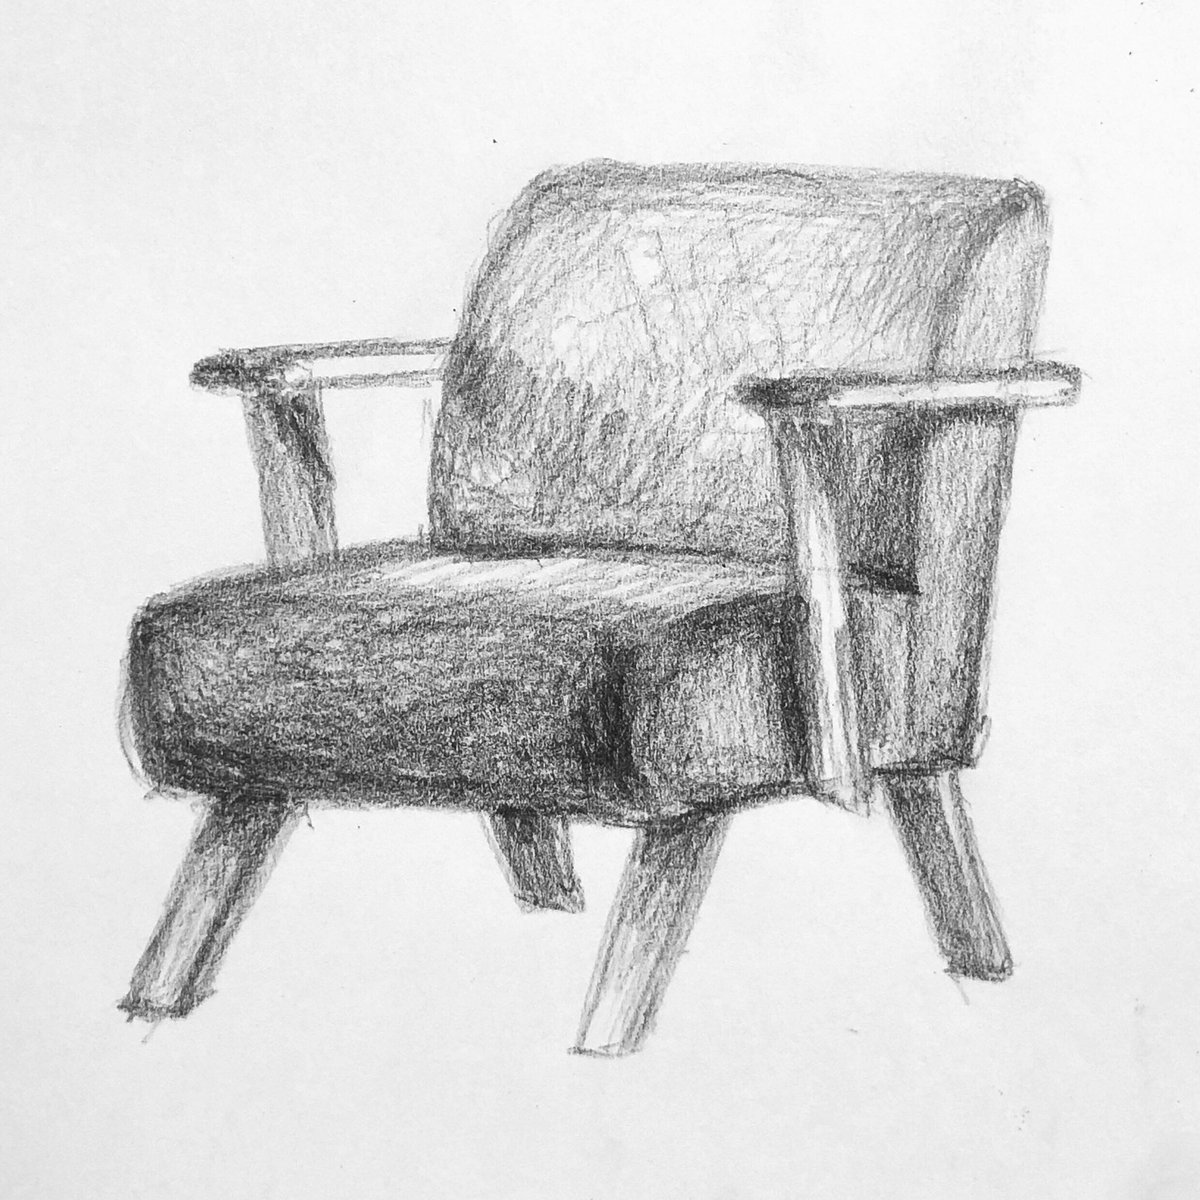 吉田すだち おはようございます 少女と椅子がでてくる絵を描きたくて 椅子のラフスケッチを何枚かしてみました いろんな椅子 ソファ があるな 椅子描くの楽しい どれが好きですか イラスト好きな人と繋がりたい 絵描きさんと繫がりたい